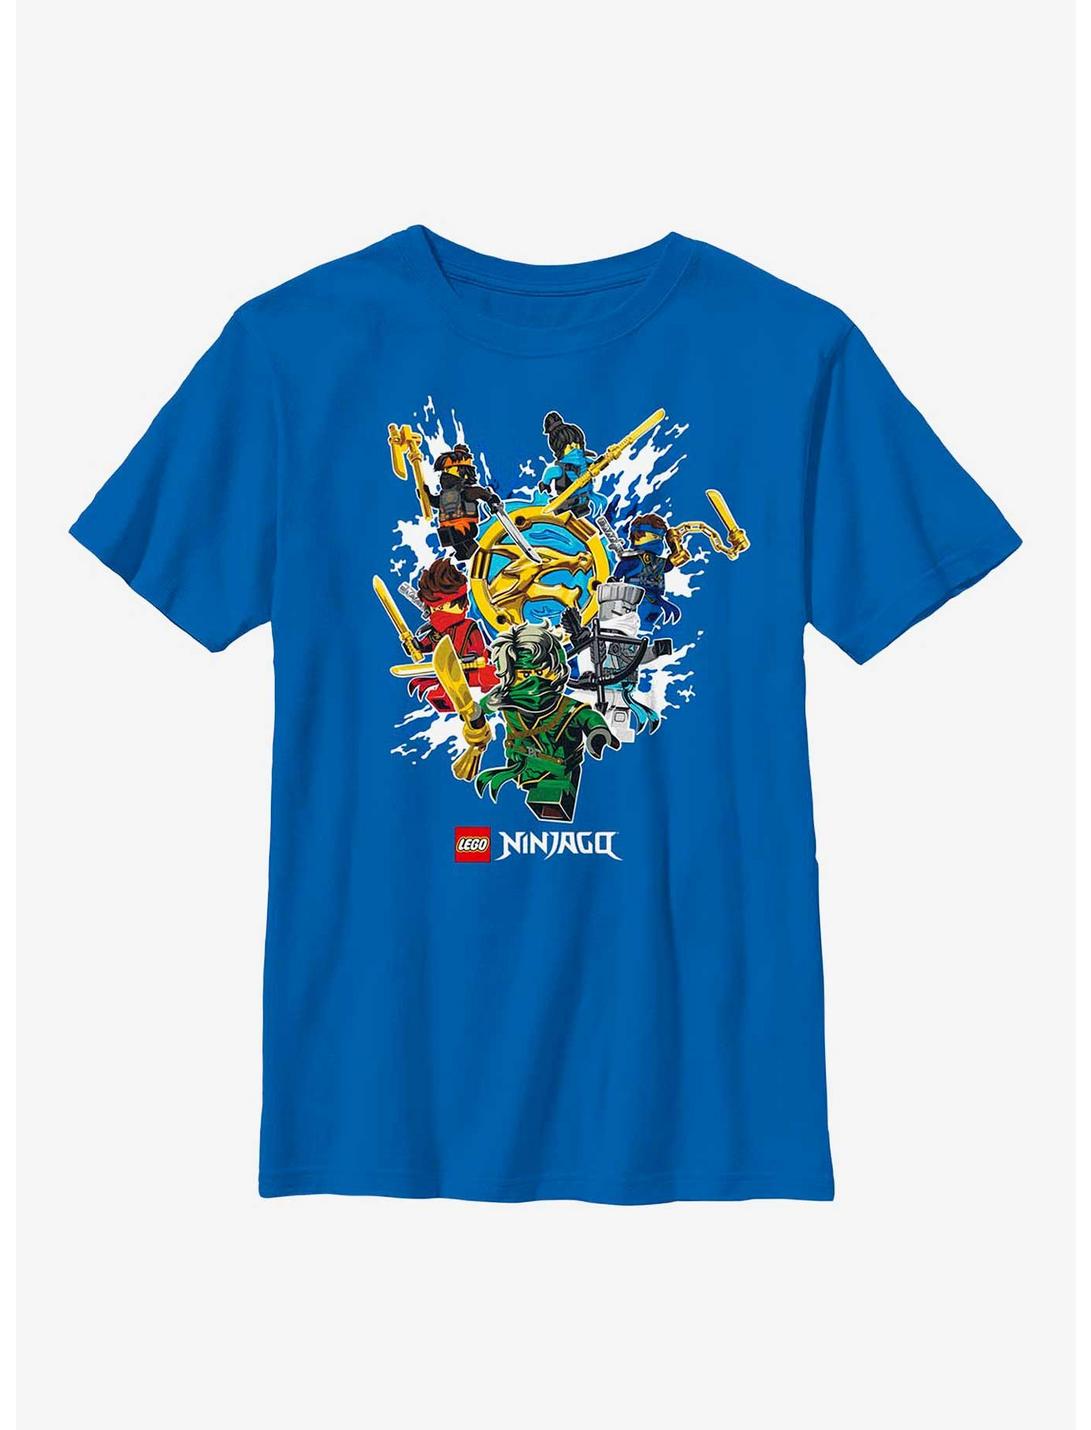 LEGO Ninjago Ninja Group Youth T-Shirt, ROYAL, hi-res